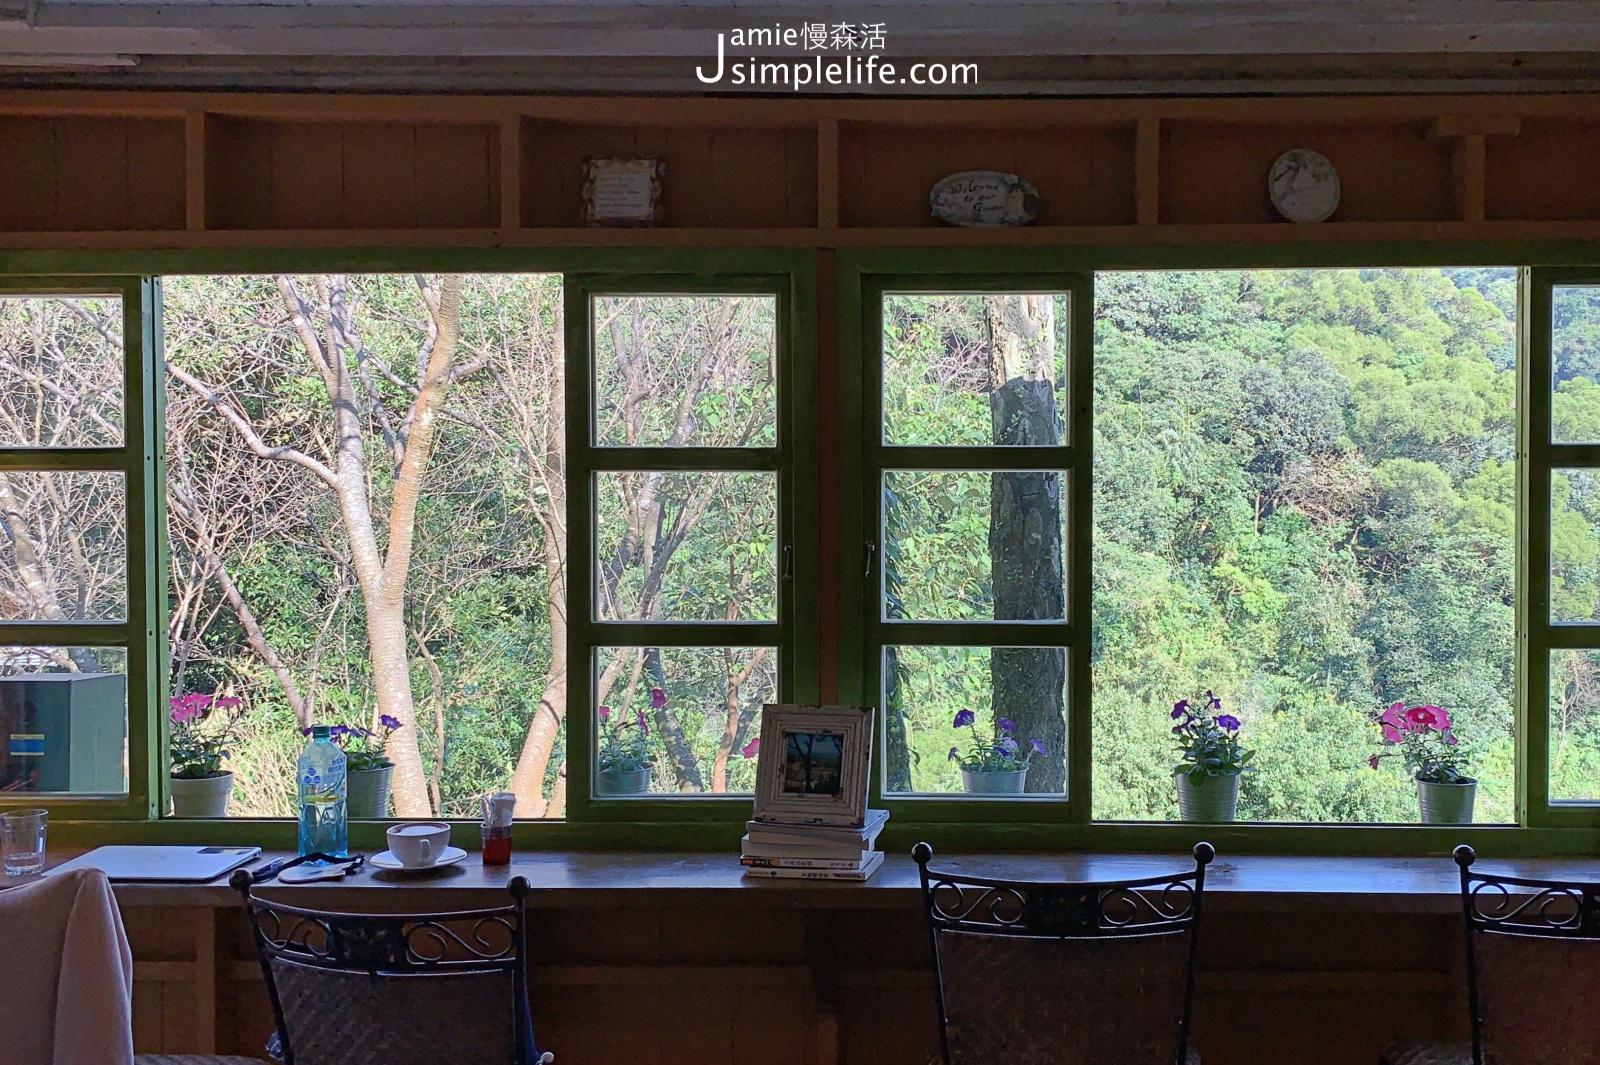 陽明山蒙馬特影像咖啡 裝飾偏甜的用餐環境與氛圍 黃色小屋空間